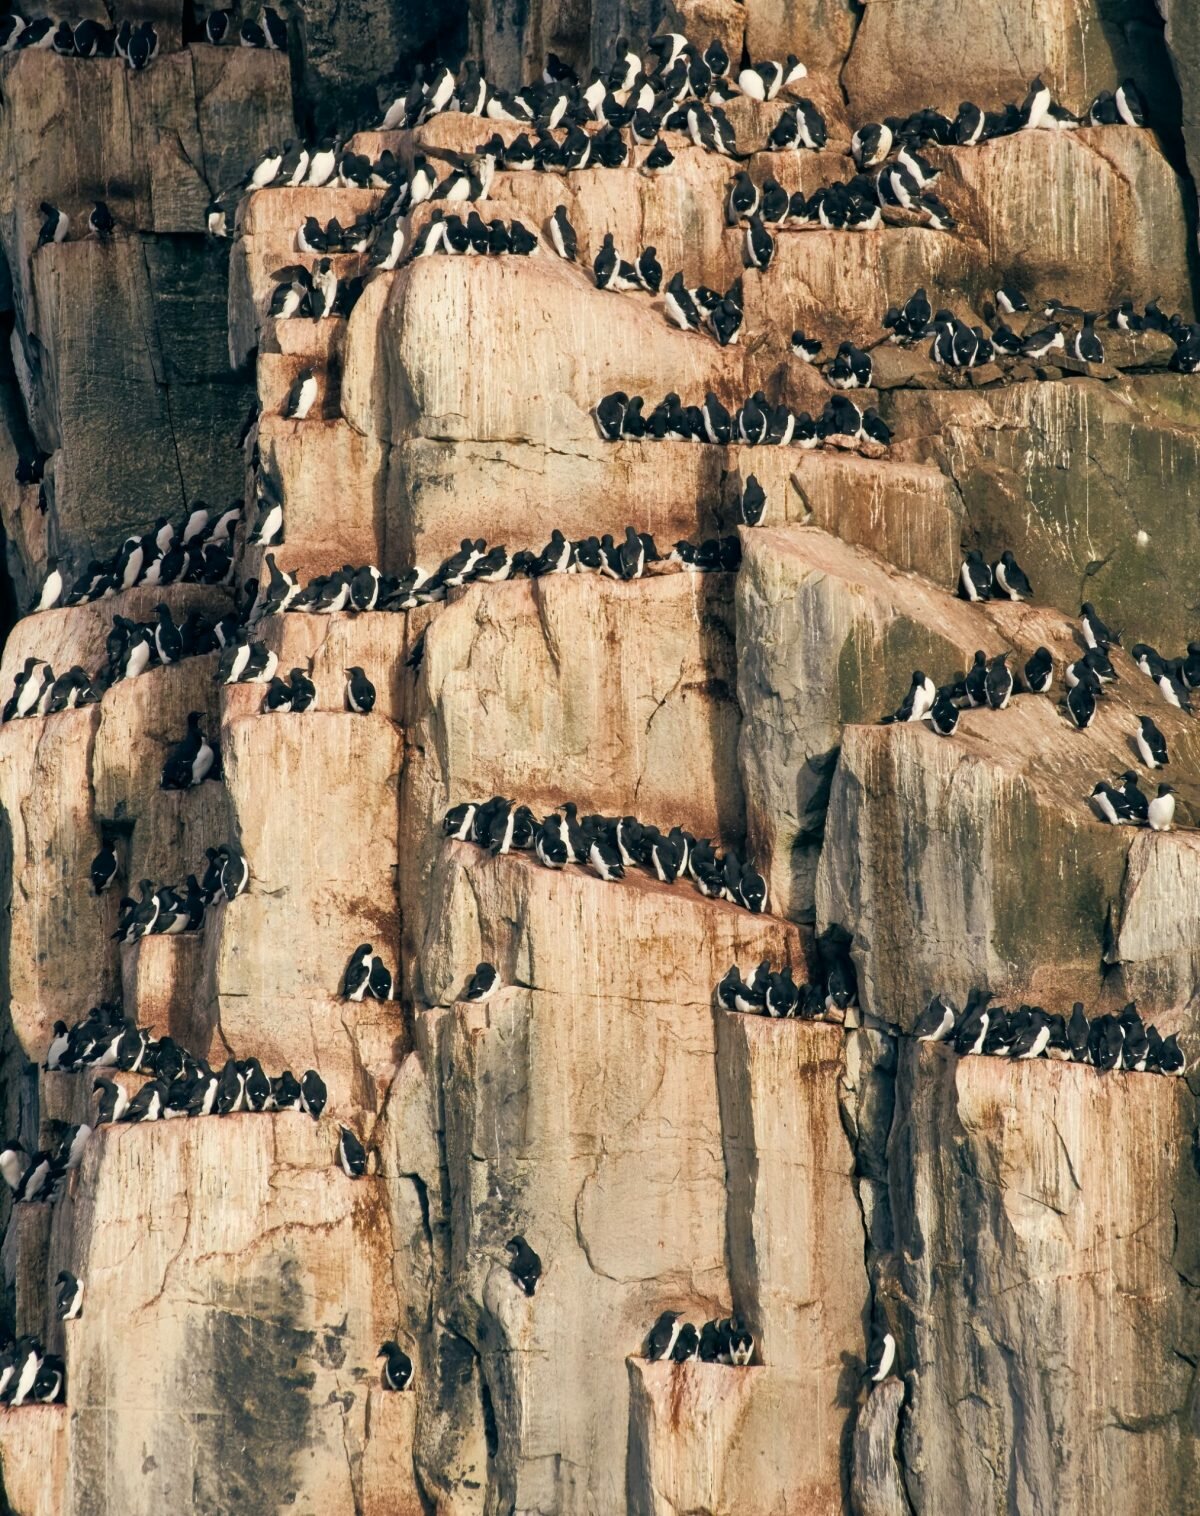 Svalbard birds Black guillemots